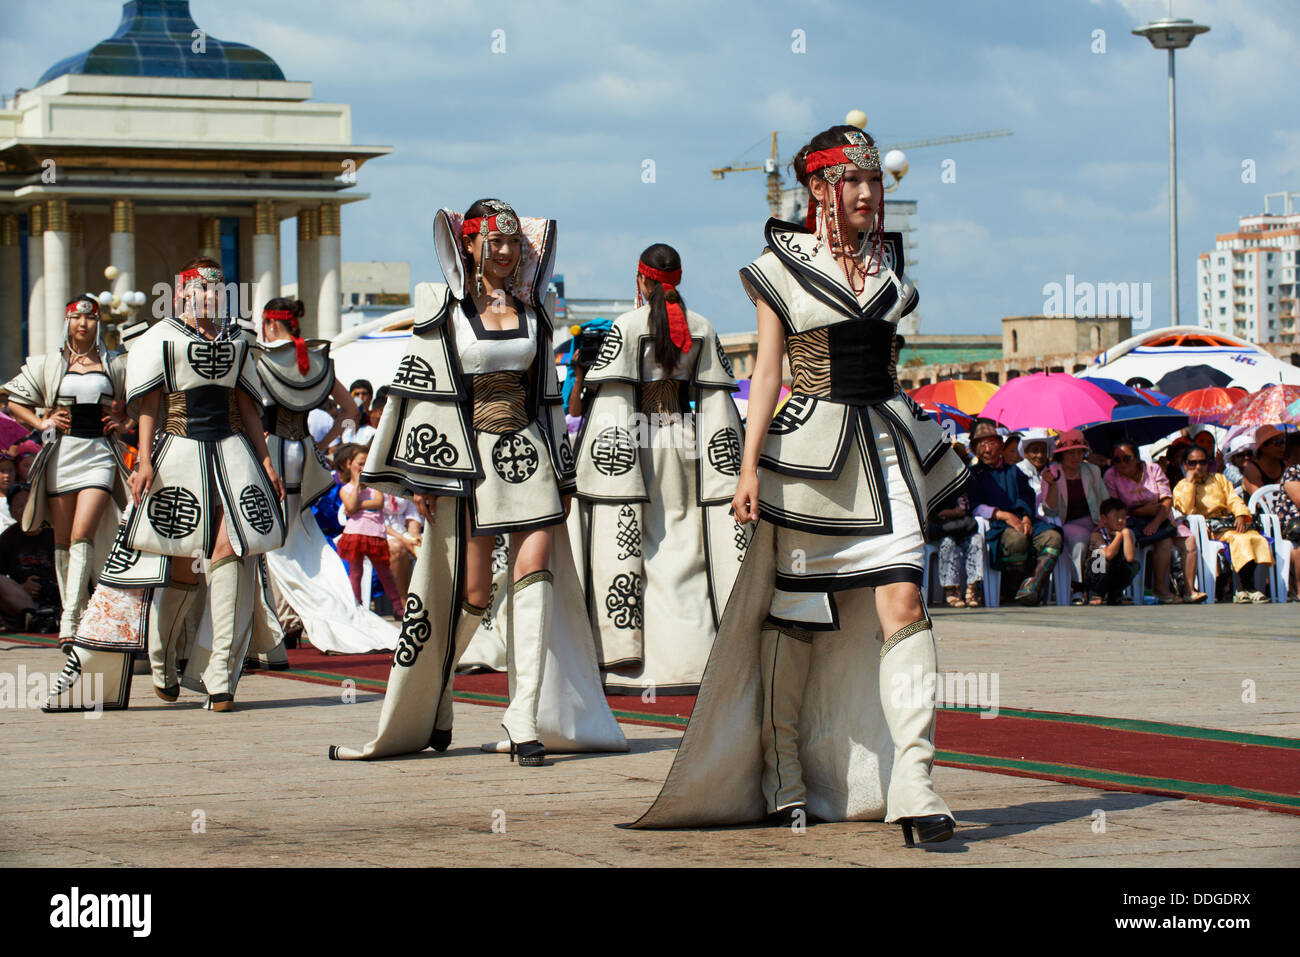 Mongolia, Ulan Bator, Sukhbaatar square, sfilata in costume per il festival Naadam, sfilata di moda Foto Stock